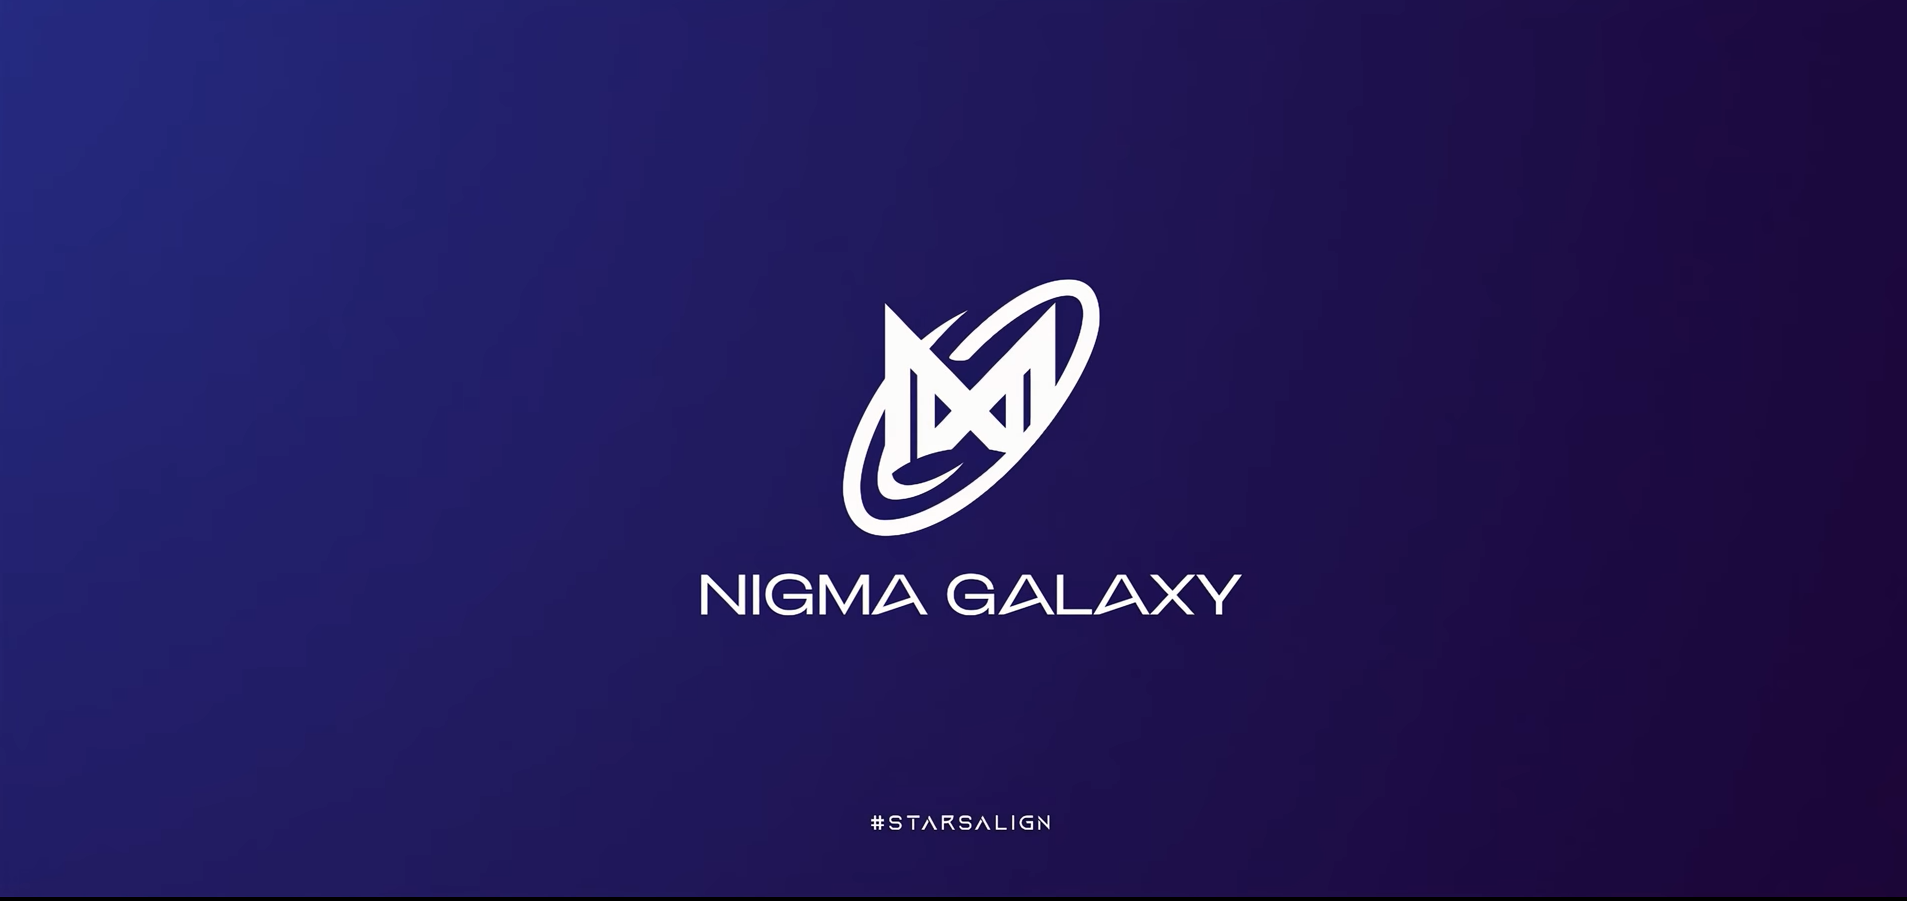 Nigma Galaxy прошла в первый дивизион DPC для Европы